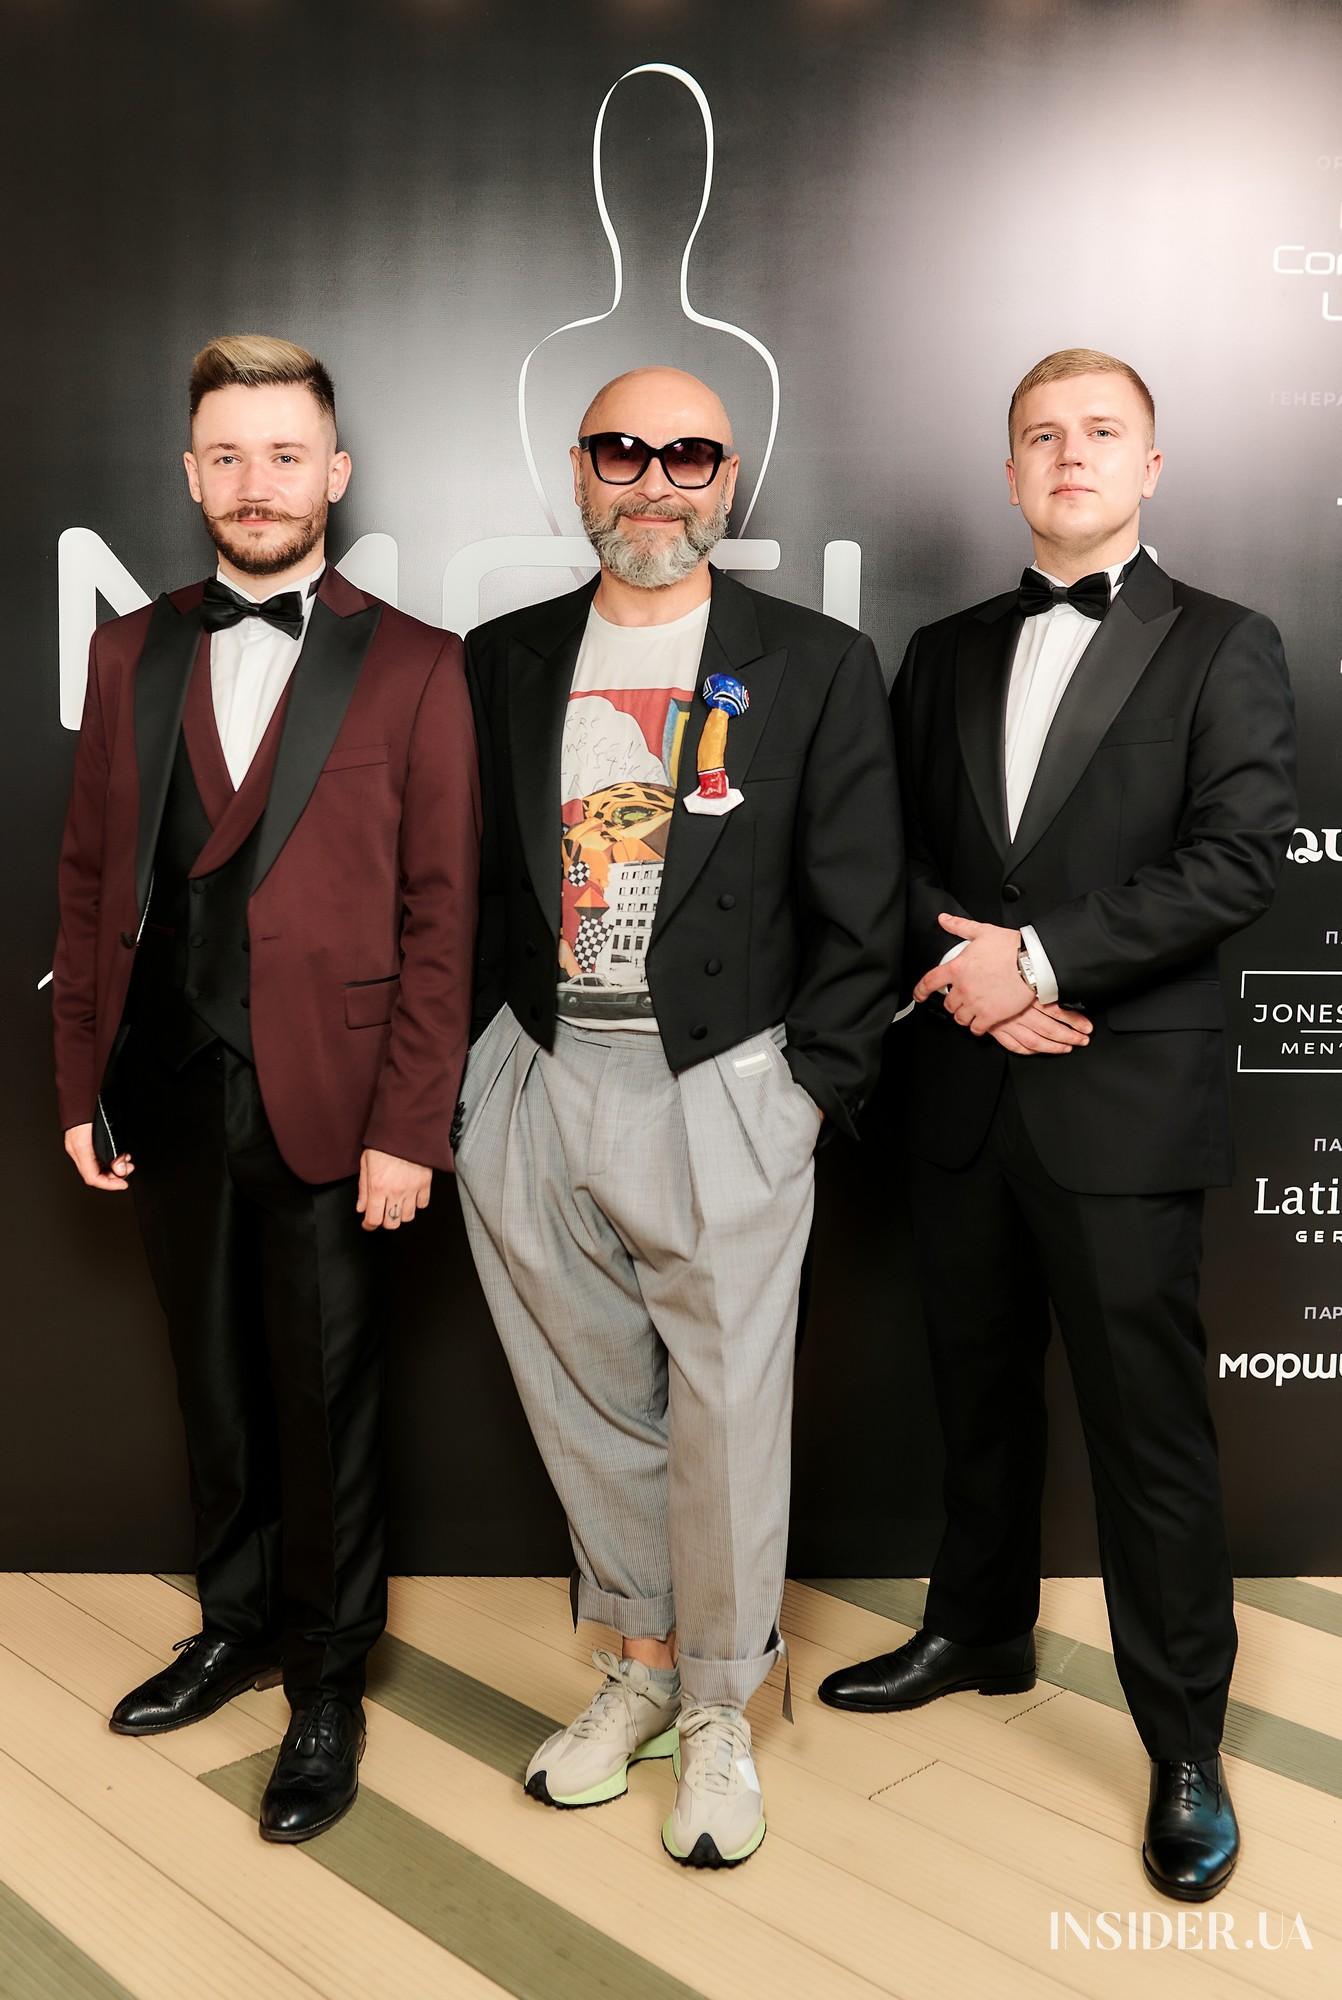 В Киеве прошла церемония вручения премии в сфере моделинга MCU Awards